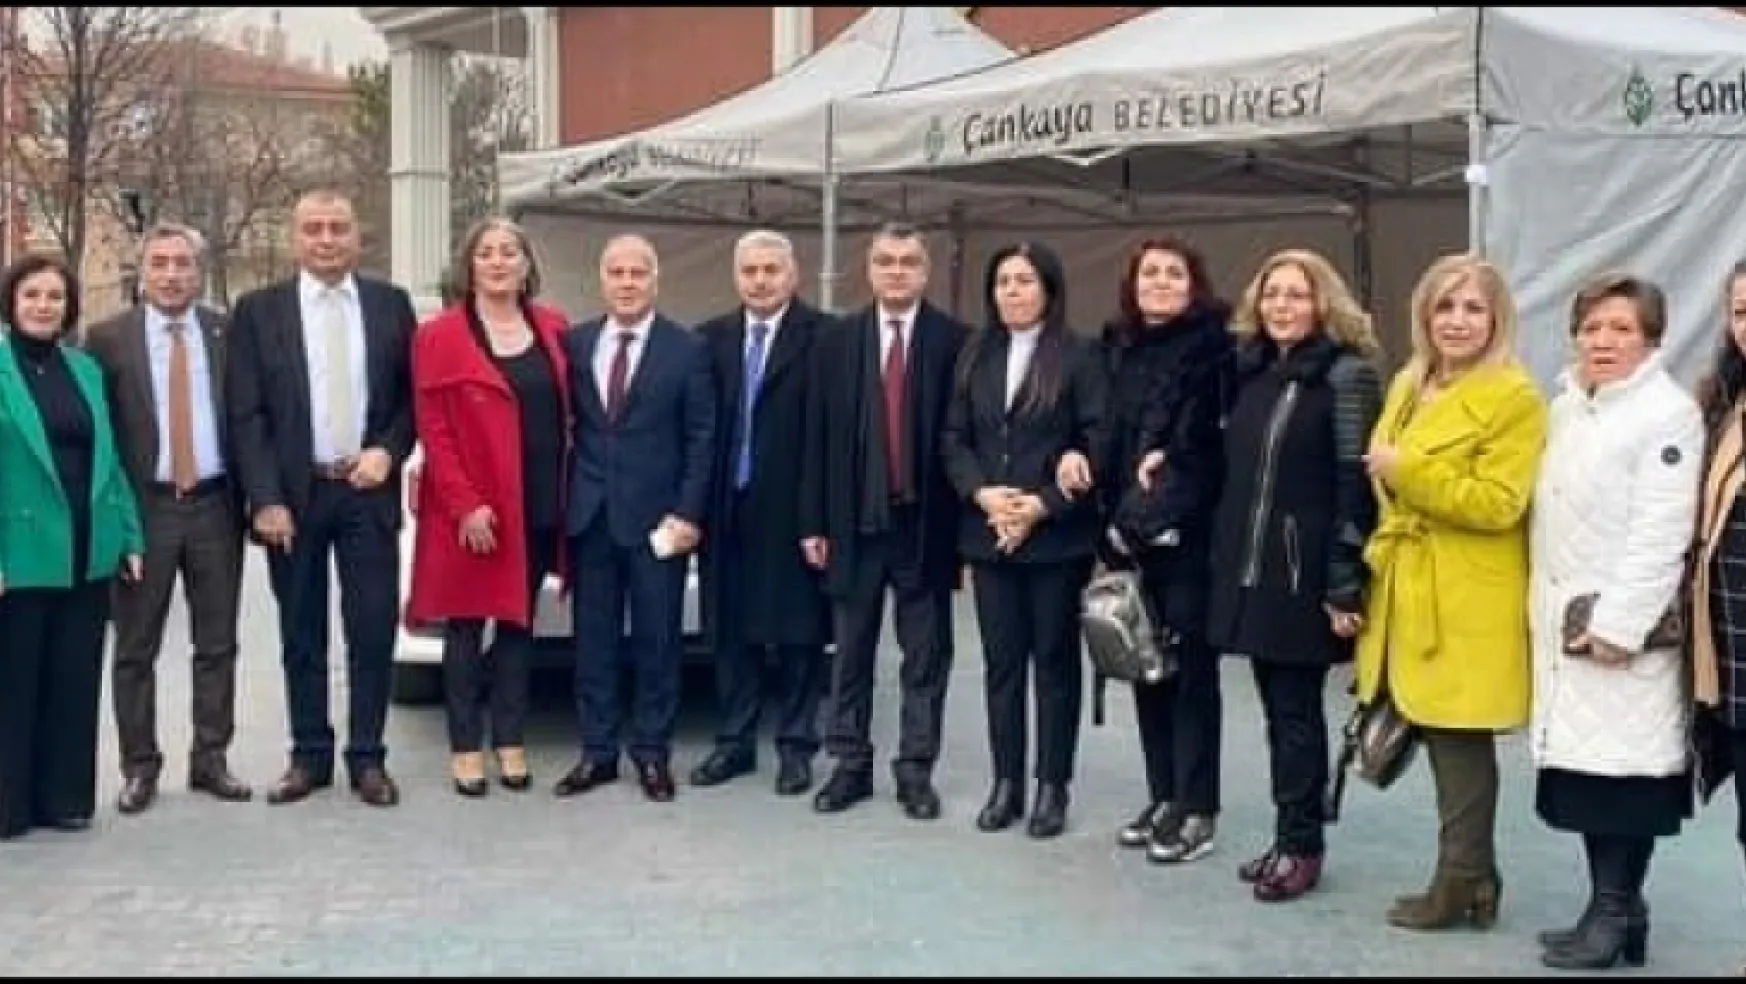 Ankara Malatya Dernekler Federasyonu Seçimli 2.Olağan Genel Kurul toplantısı gerçekleştirildi